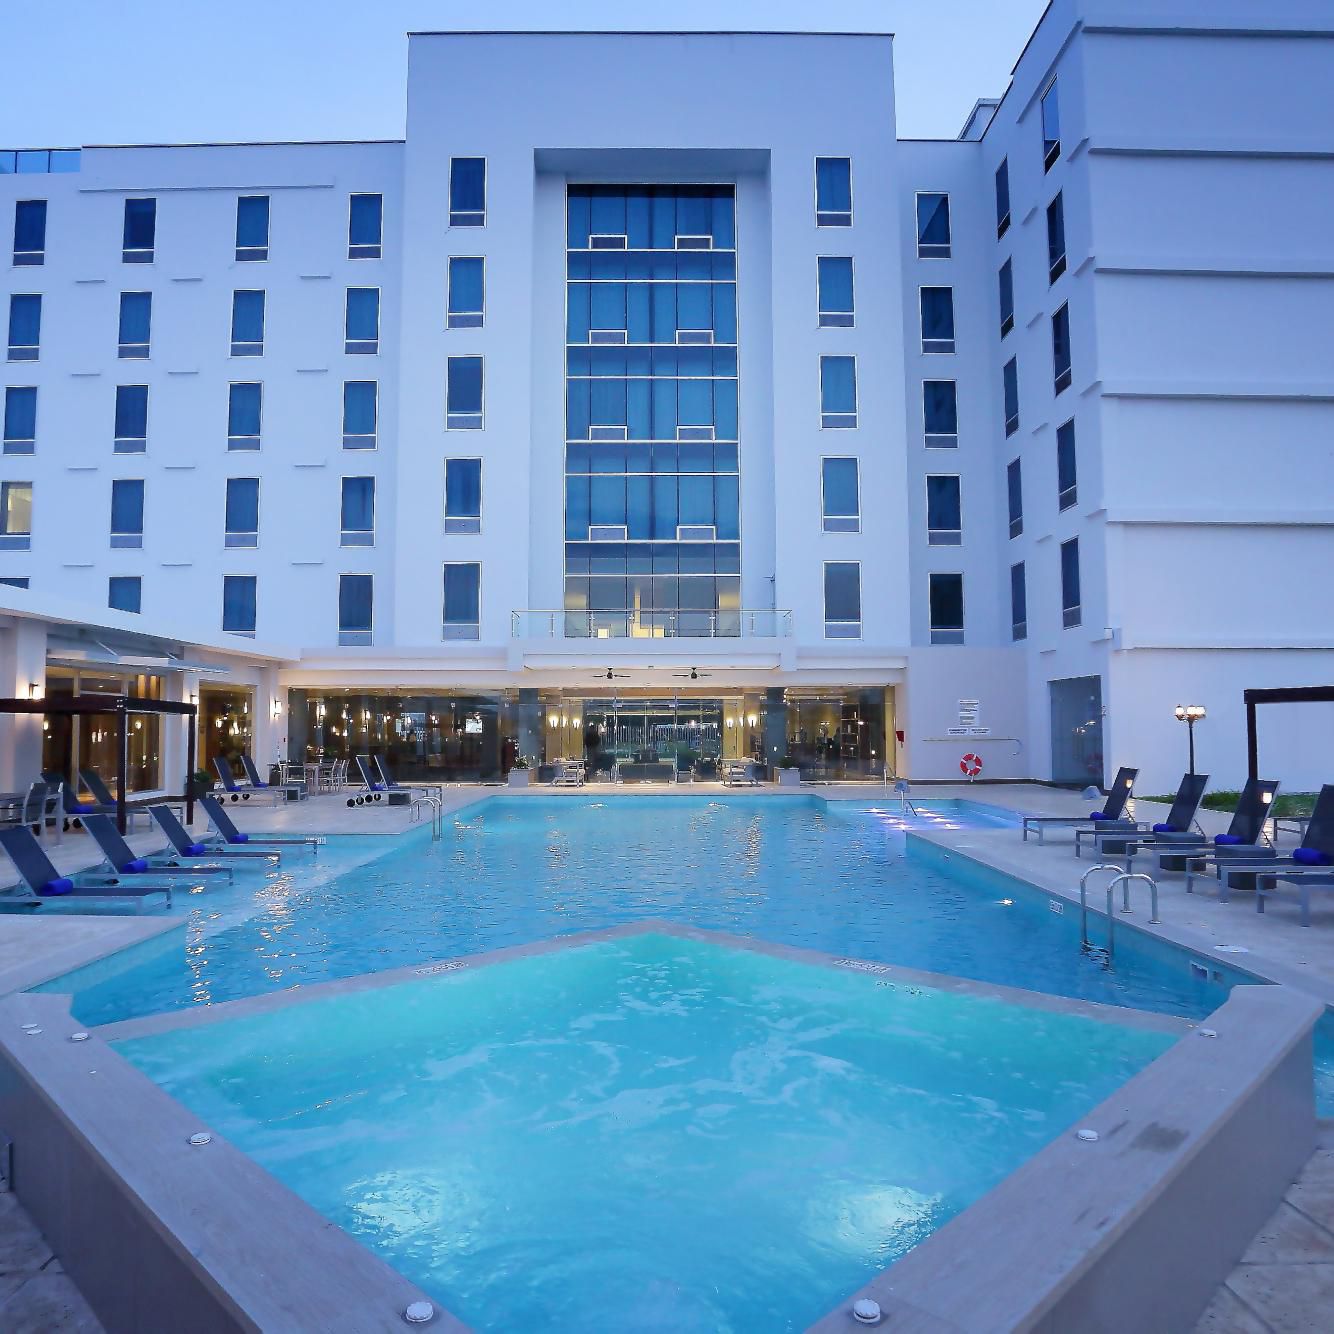 Swimming Pool at Airport Hotel Panama Crowne Plaza